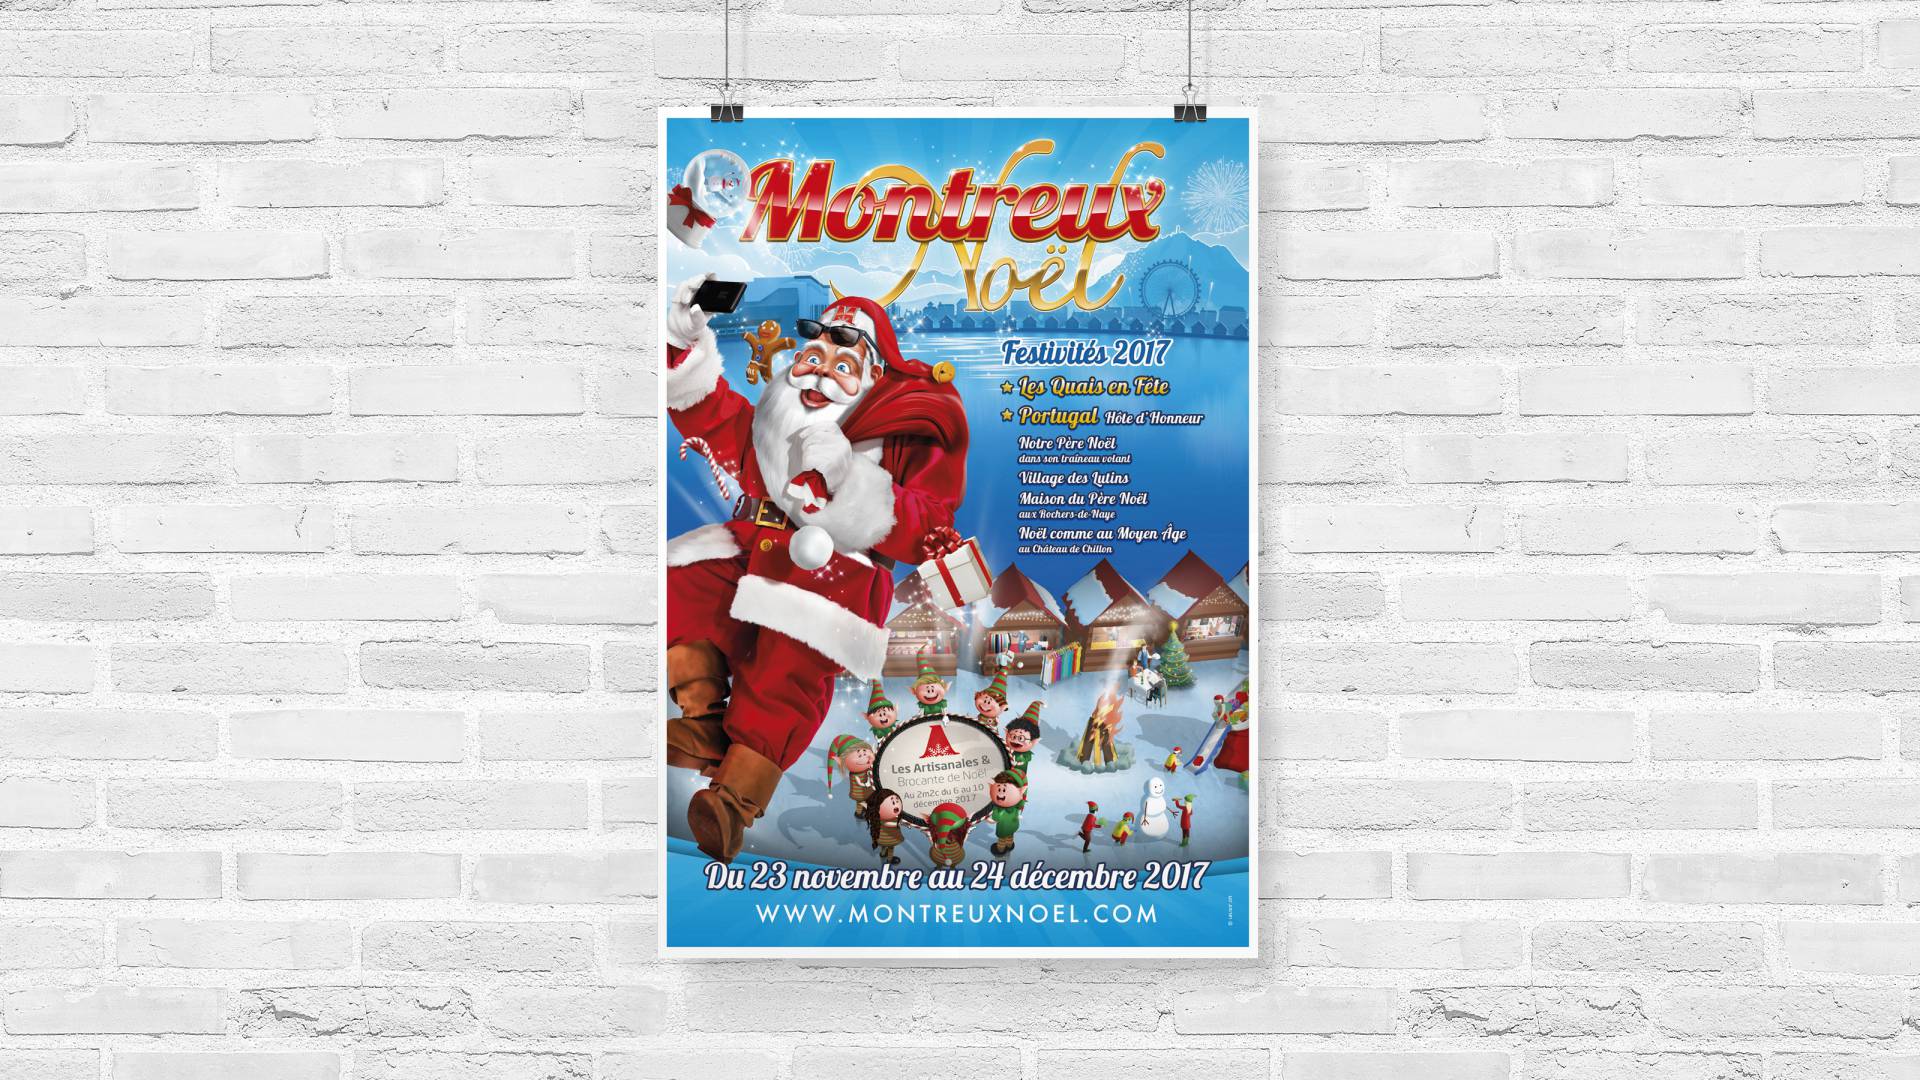 Montreux Noël by L'elixir - Montreux